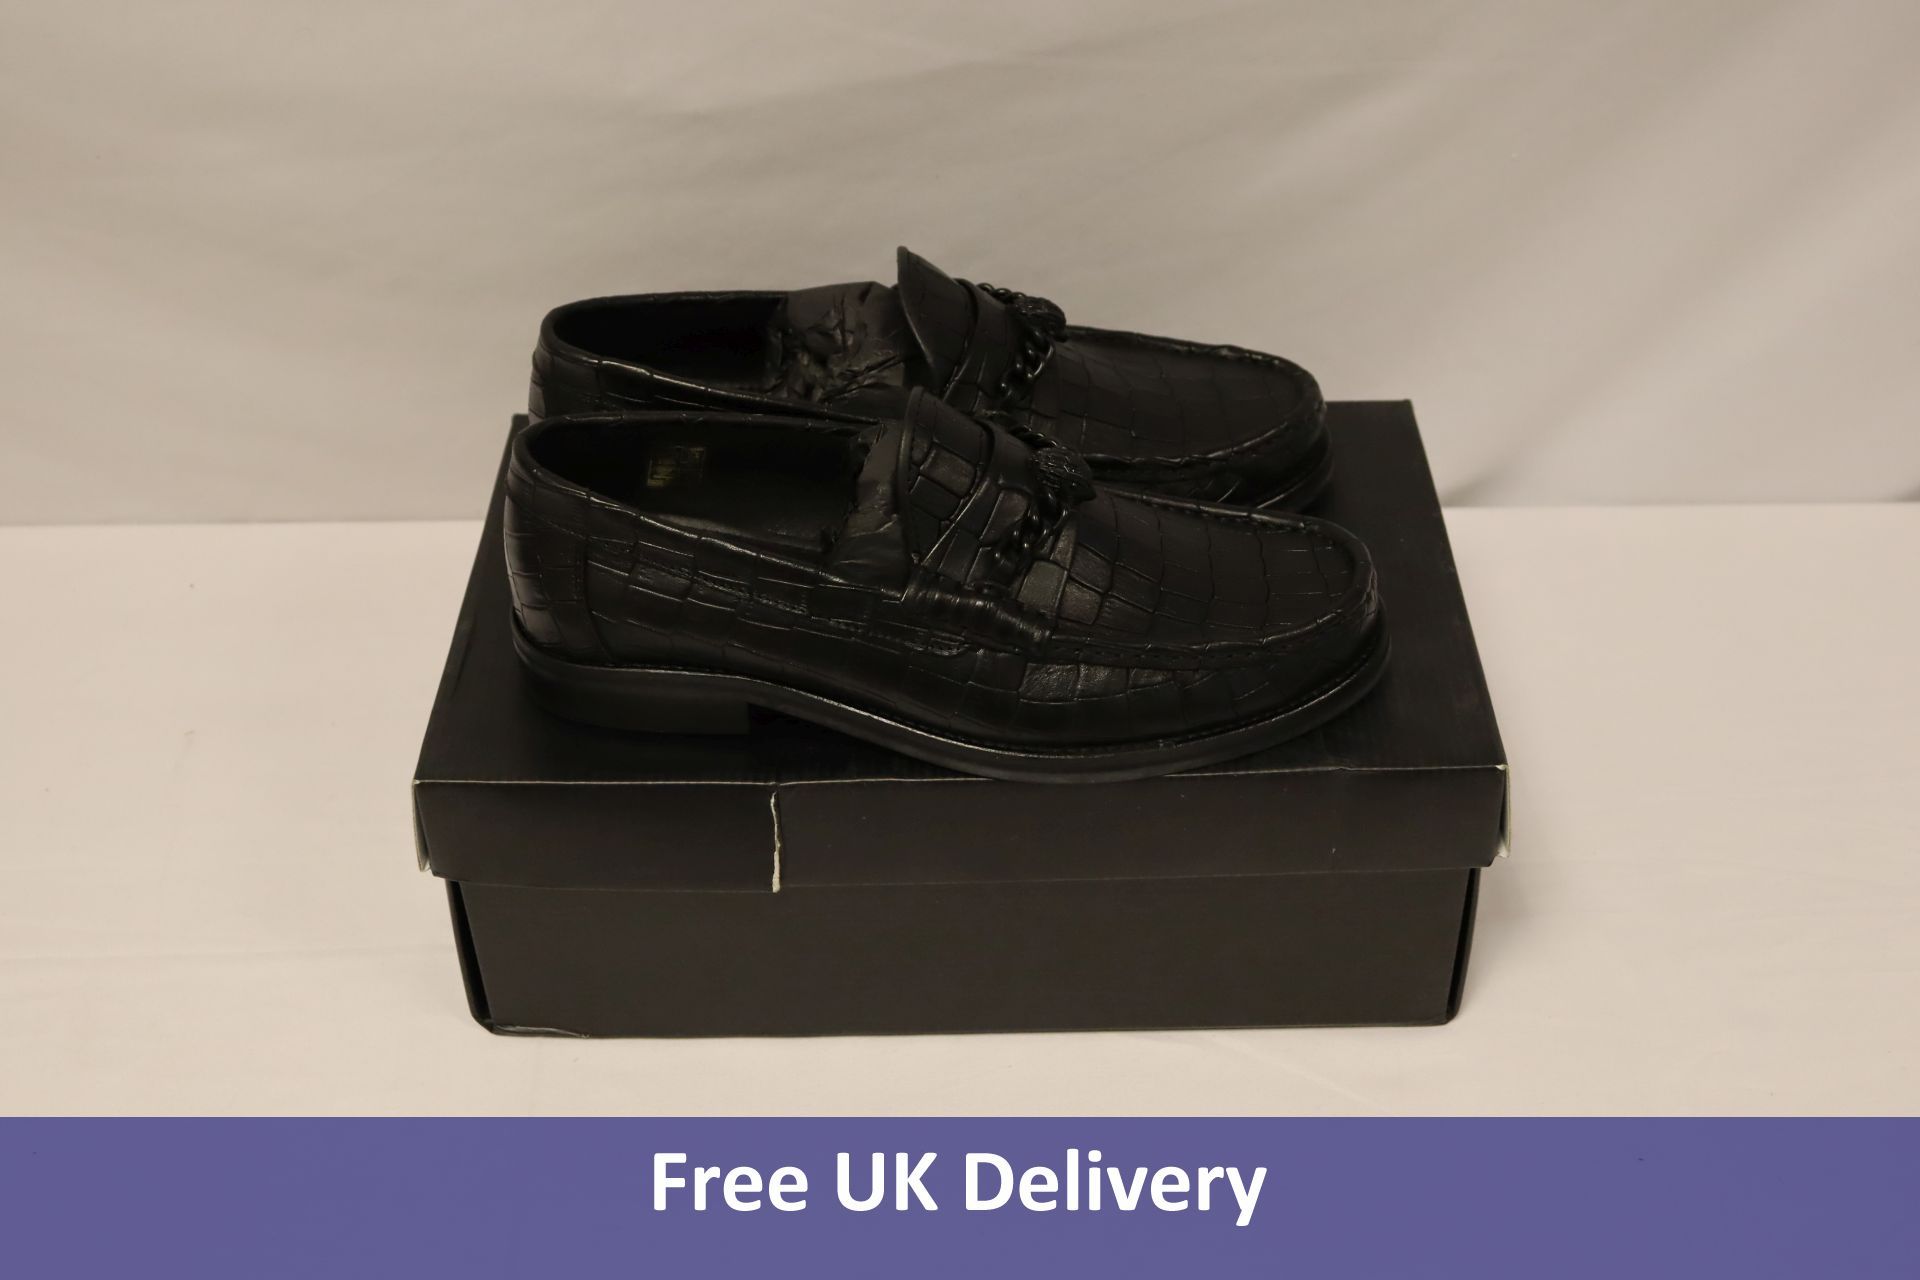 Kurt Geiger Vincent Leather Croc Print Chain Shoes, Black, EU 40. Box damaged